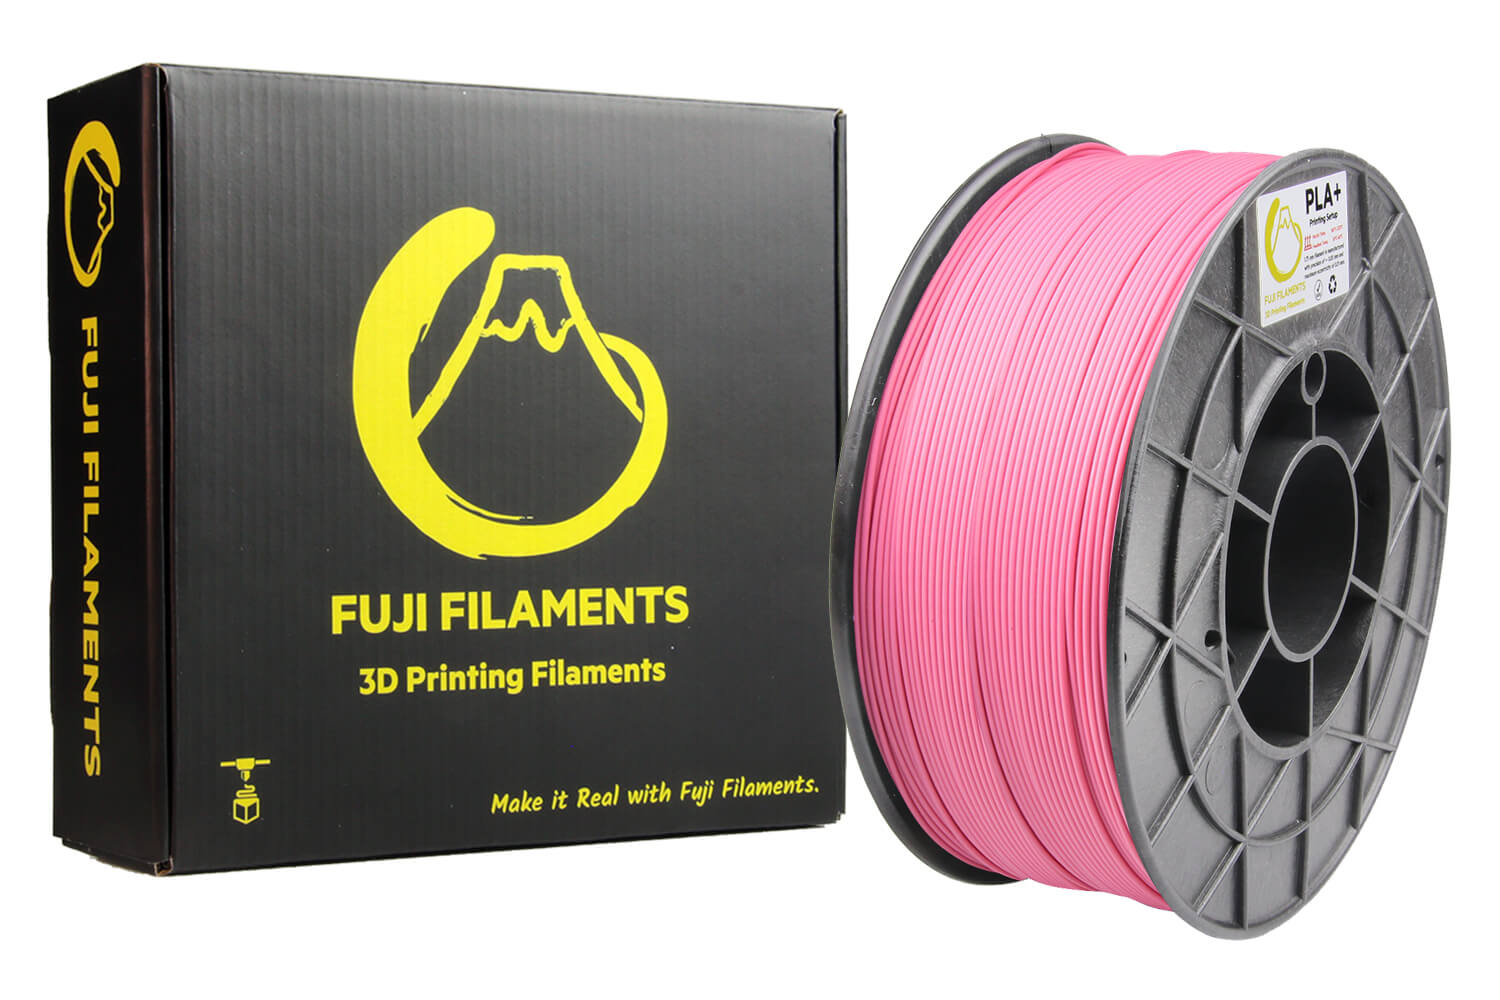 fuji-pembe-pla+-filament-1kg-1.jpg (143 KB)